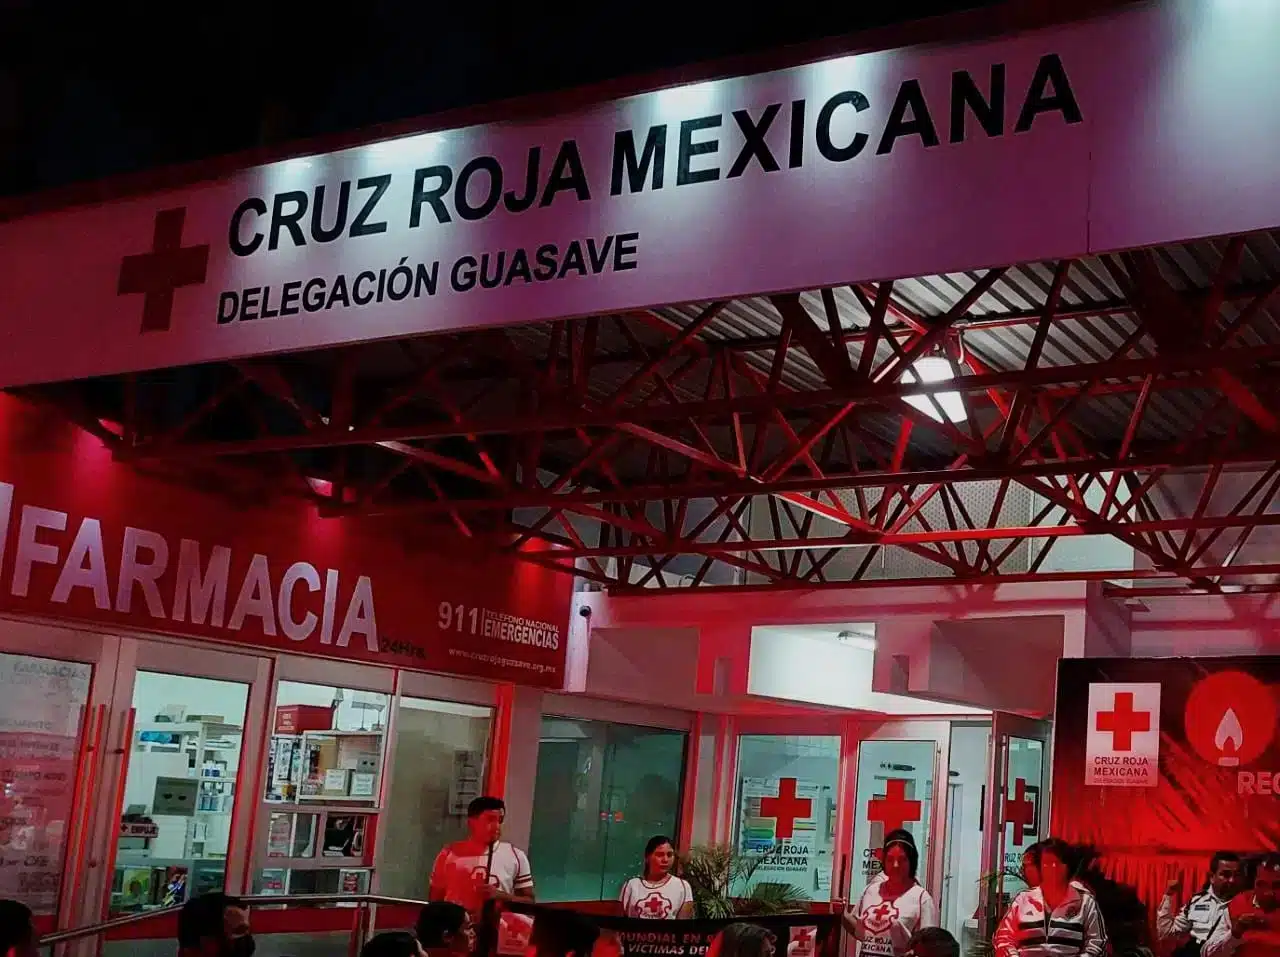 Cruz Roja Mexicana delegación Guasave